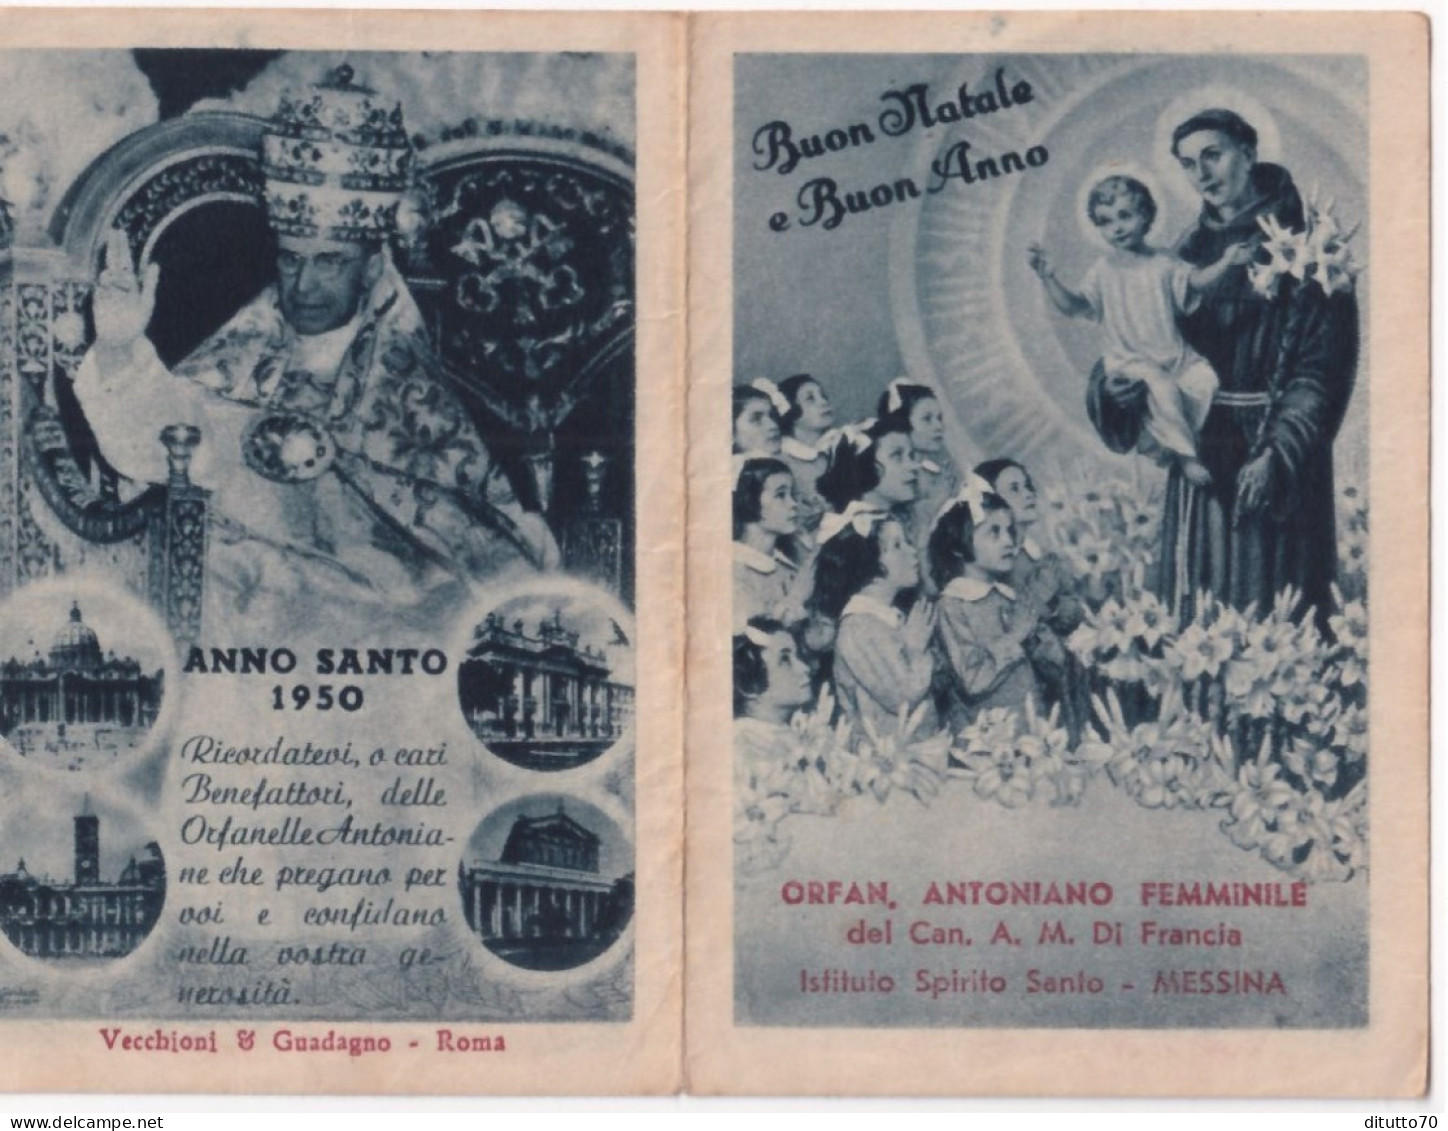 Calendarietto - Orfanotrofio Antoniano Femminile  Del Can A.m.di Francia - Messina - Anno  1950 - Petit Format : 1941-60